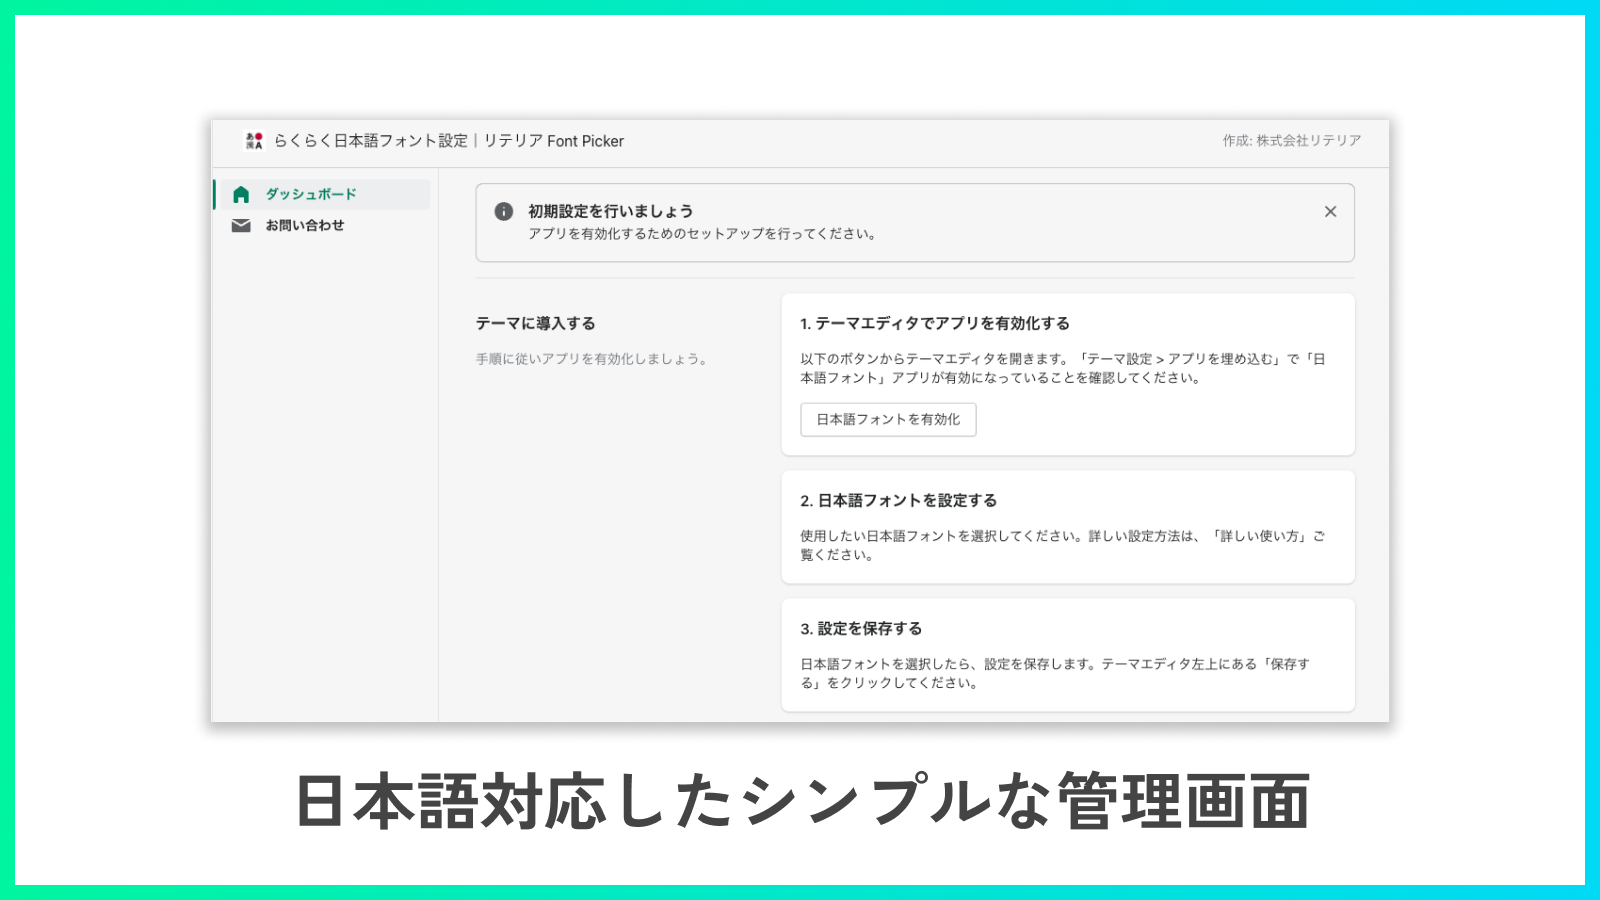 完全日本語対応した管理画面なので、安心してご利用いただけます！